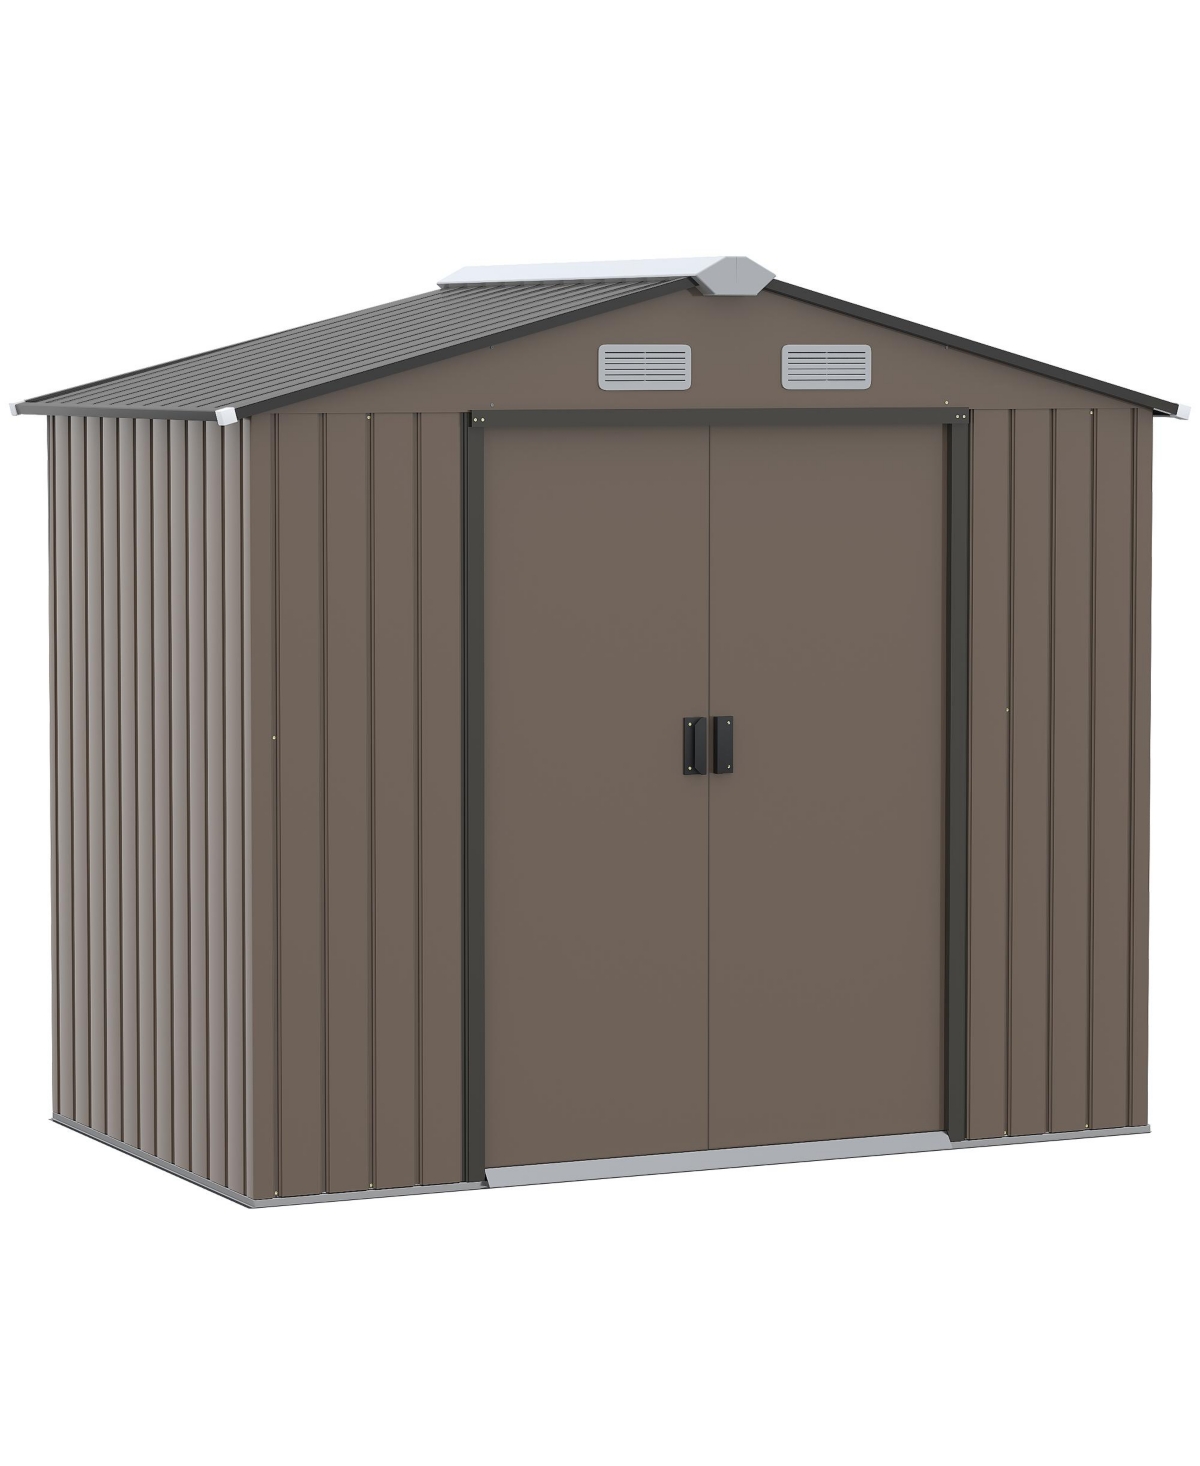 Garden Shed Storage Unit w/ Locking Door Floor Foundation Air Vent Brown - Brown